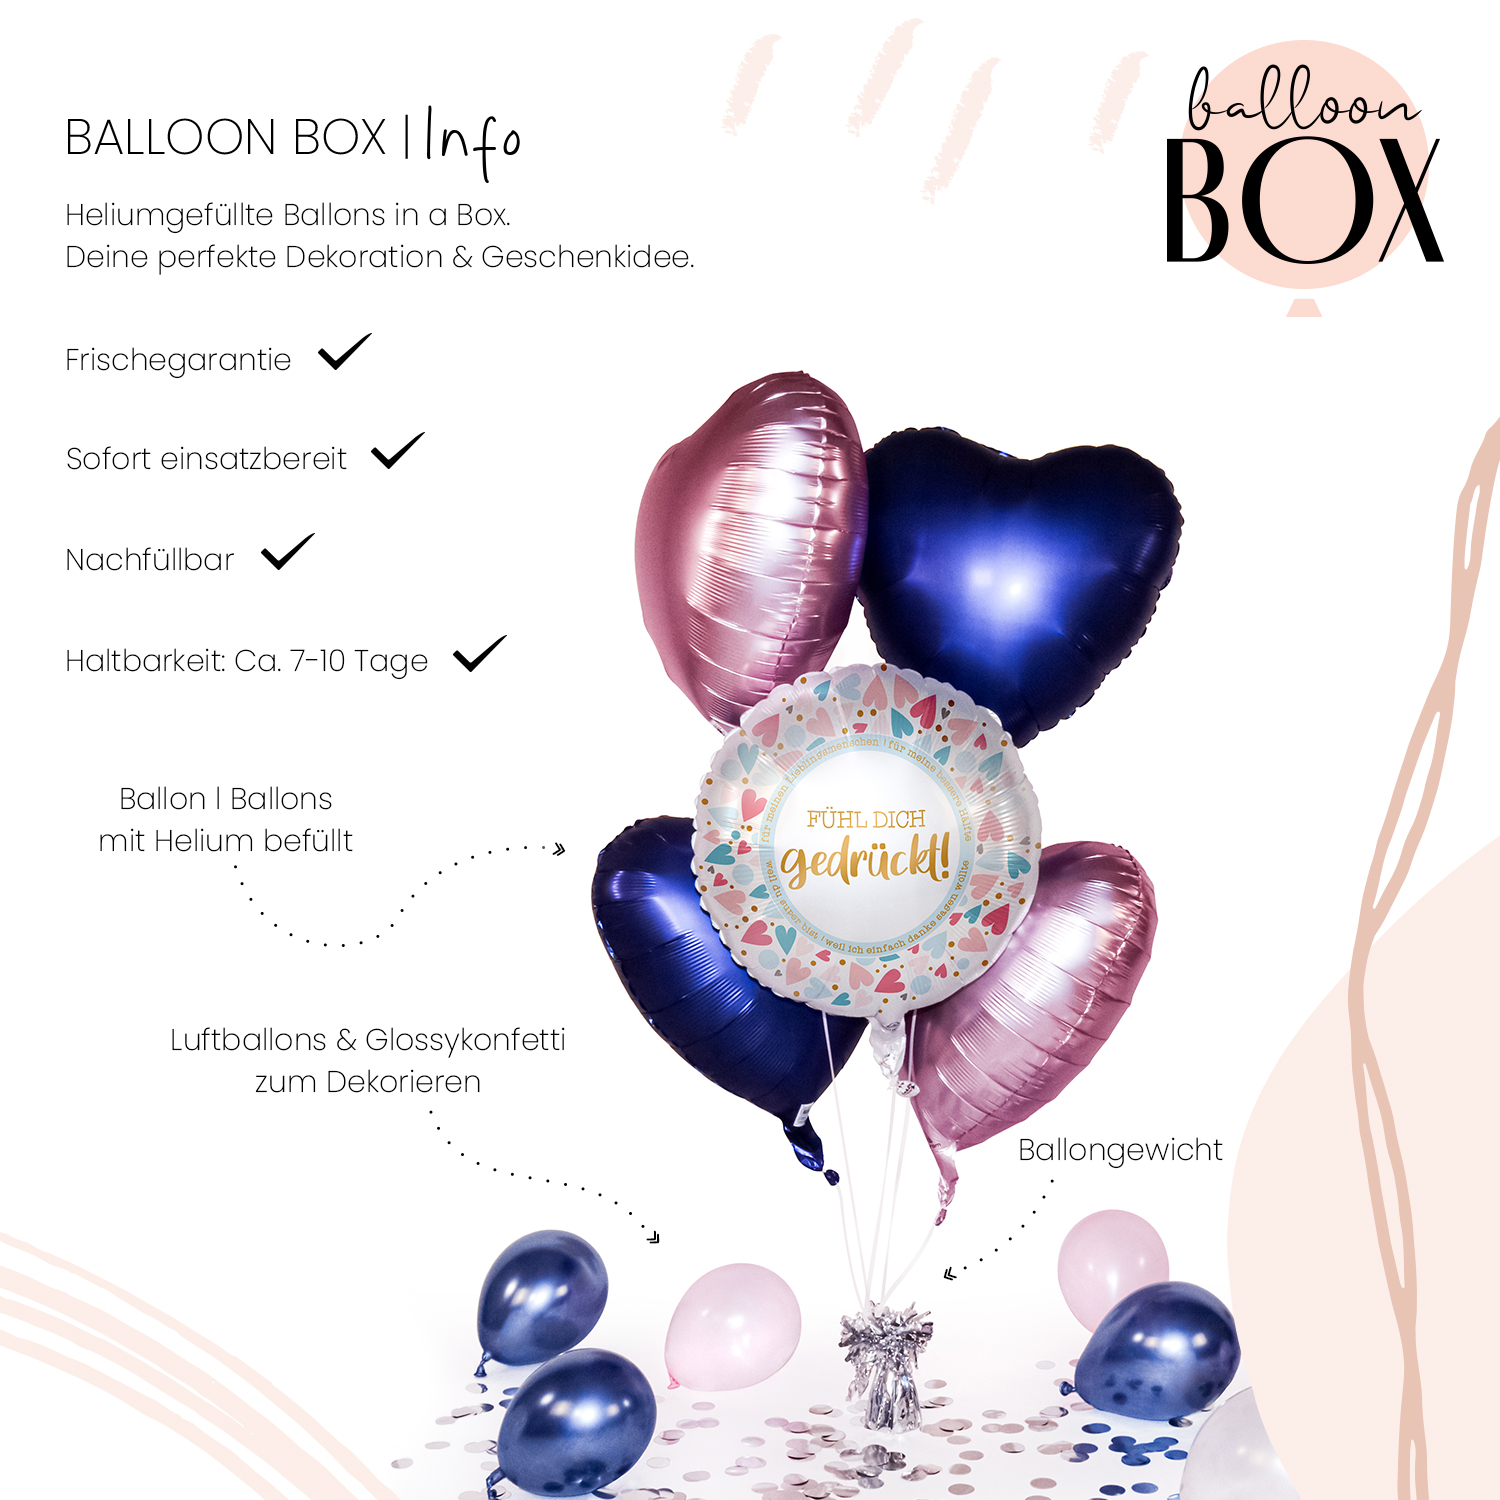 Luftballons "Butterflies" silber-weiß Ballons Motivballons Hochzeit 8 Stück 